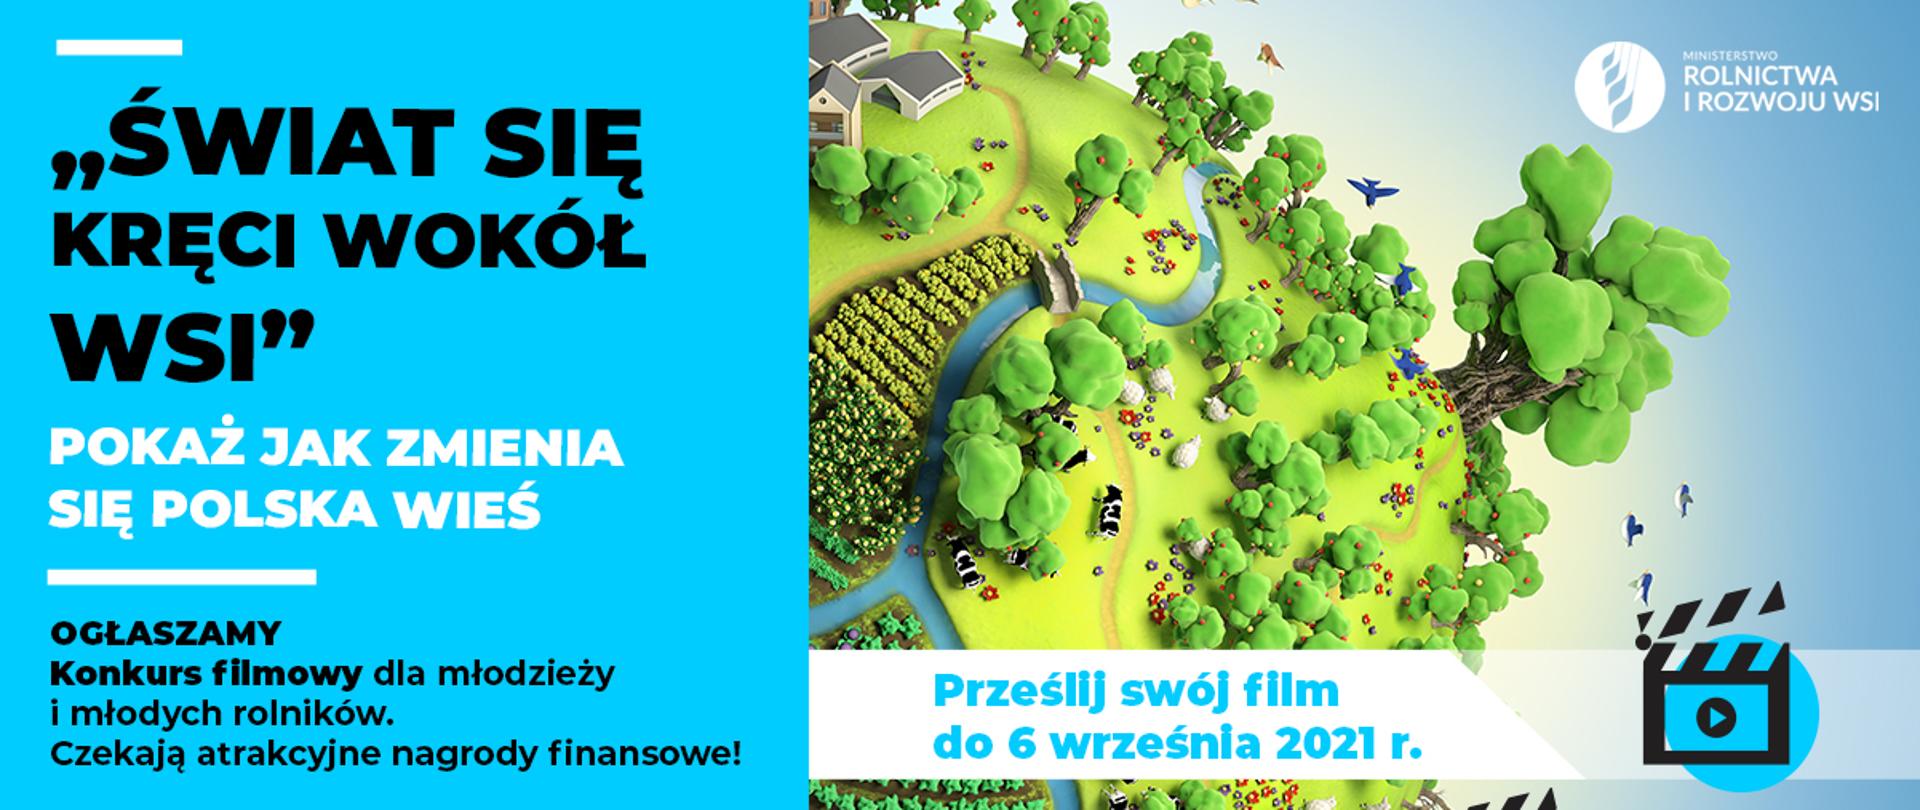 Grafika do konkursu filmowego "Świat się kręci wokół wsi"